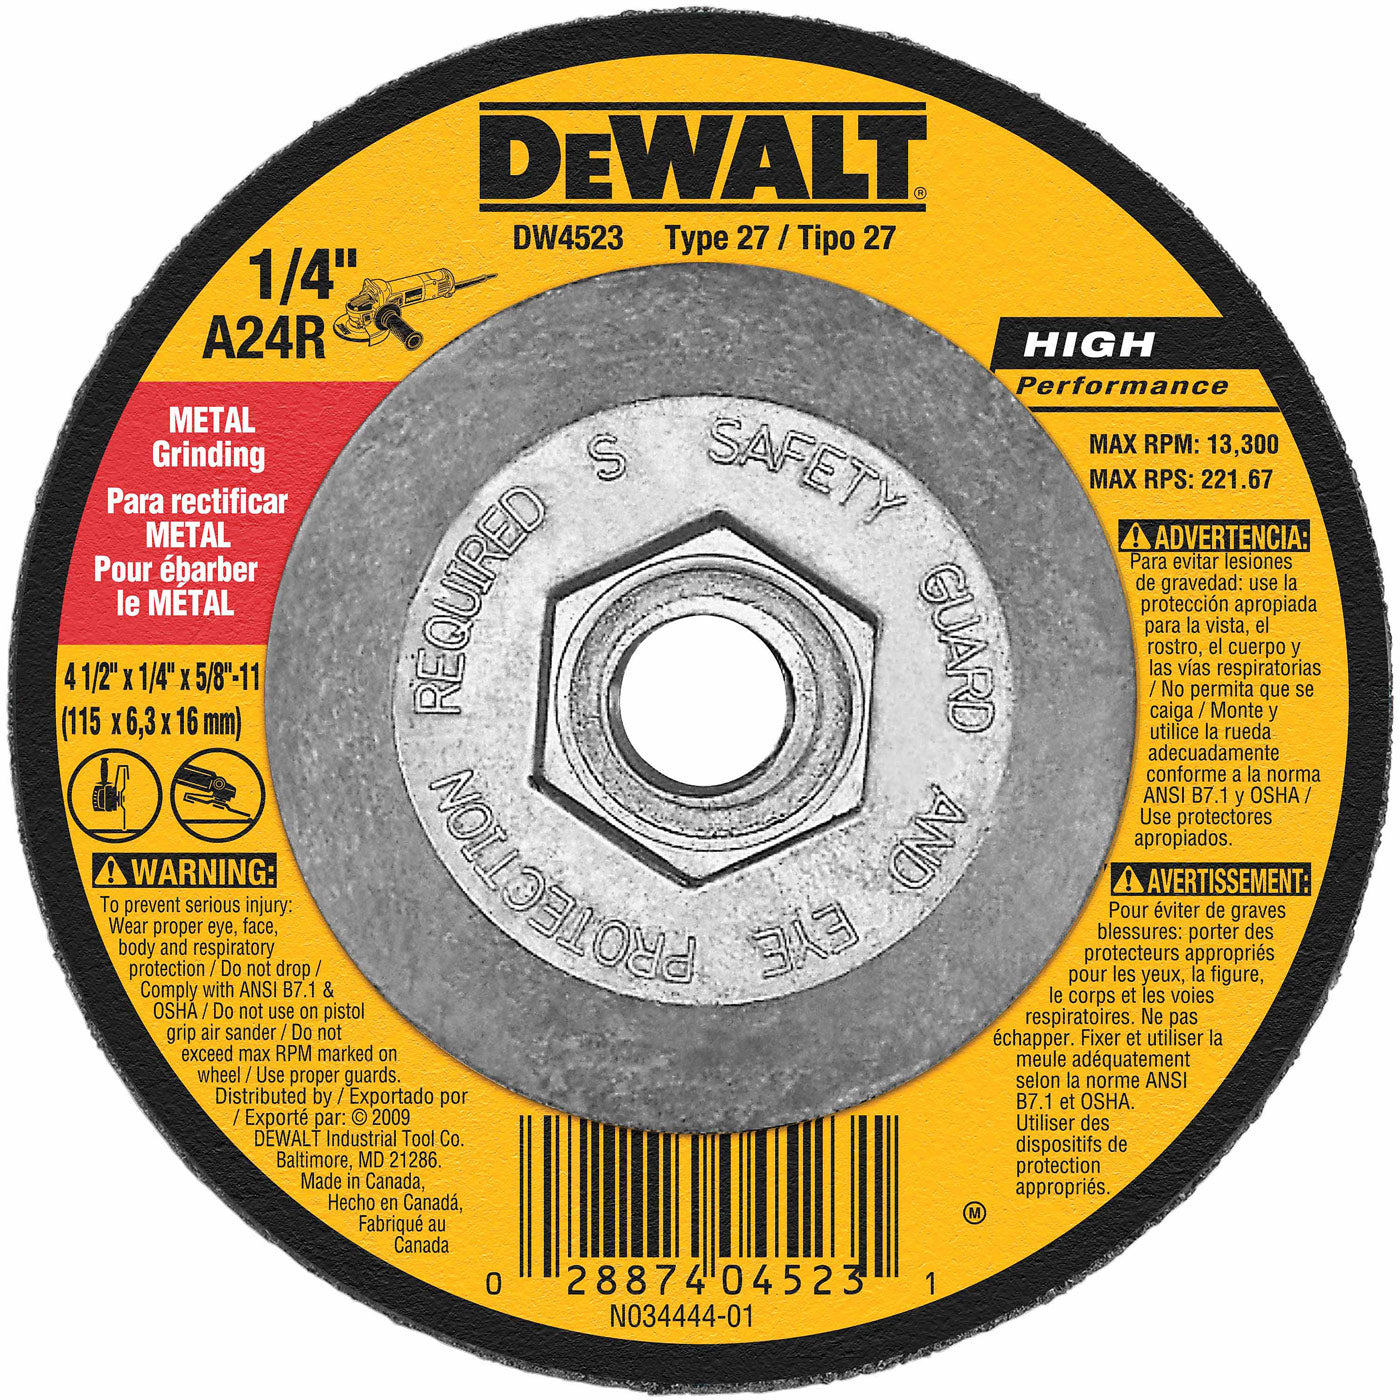 DeWalt DW4523 4-1/2" x 1/4" x 5/8"-11 General Purpose Metal Grinding Wheel